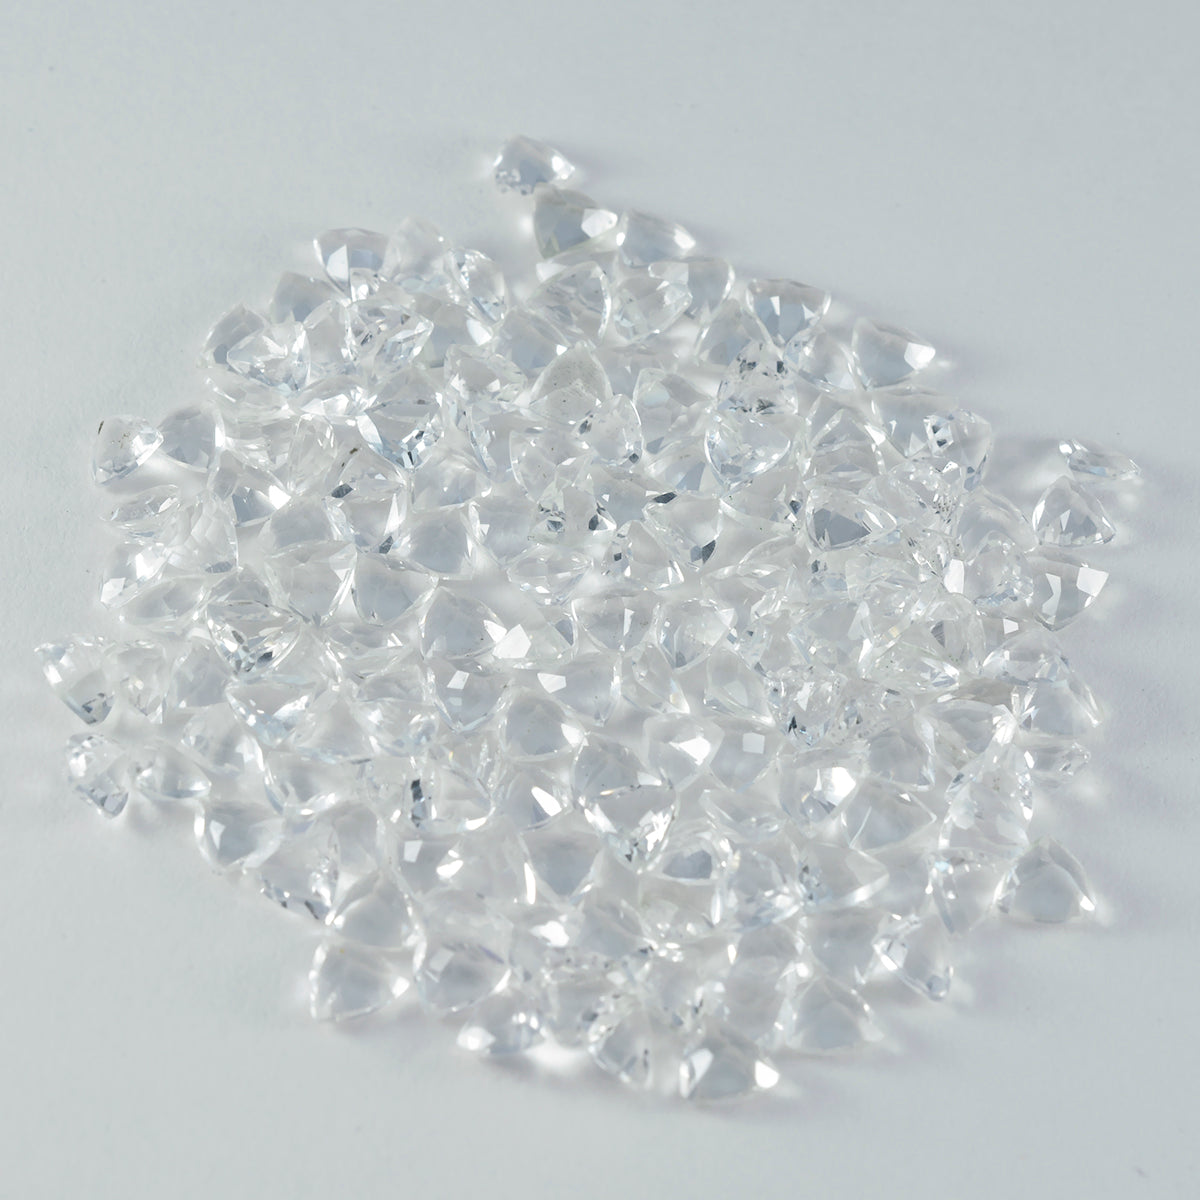 Riyogems 1PC wit kristalkwarts gefacetteerd 5x5 mm biljoen vorm prachtige kwaliteitsedelstenen